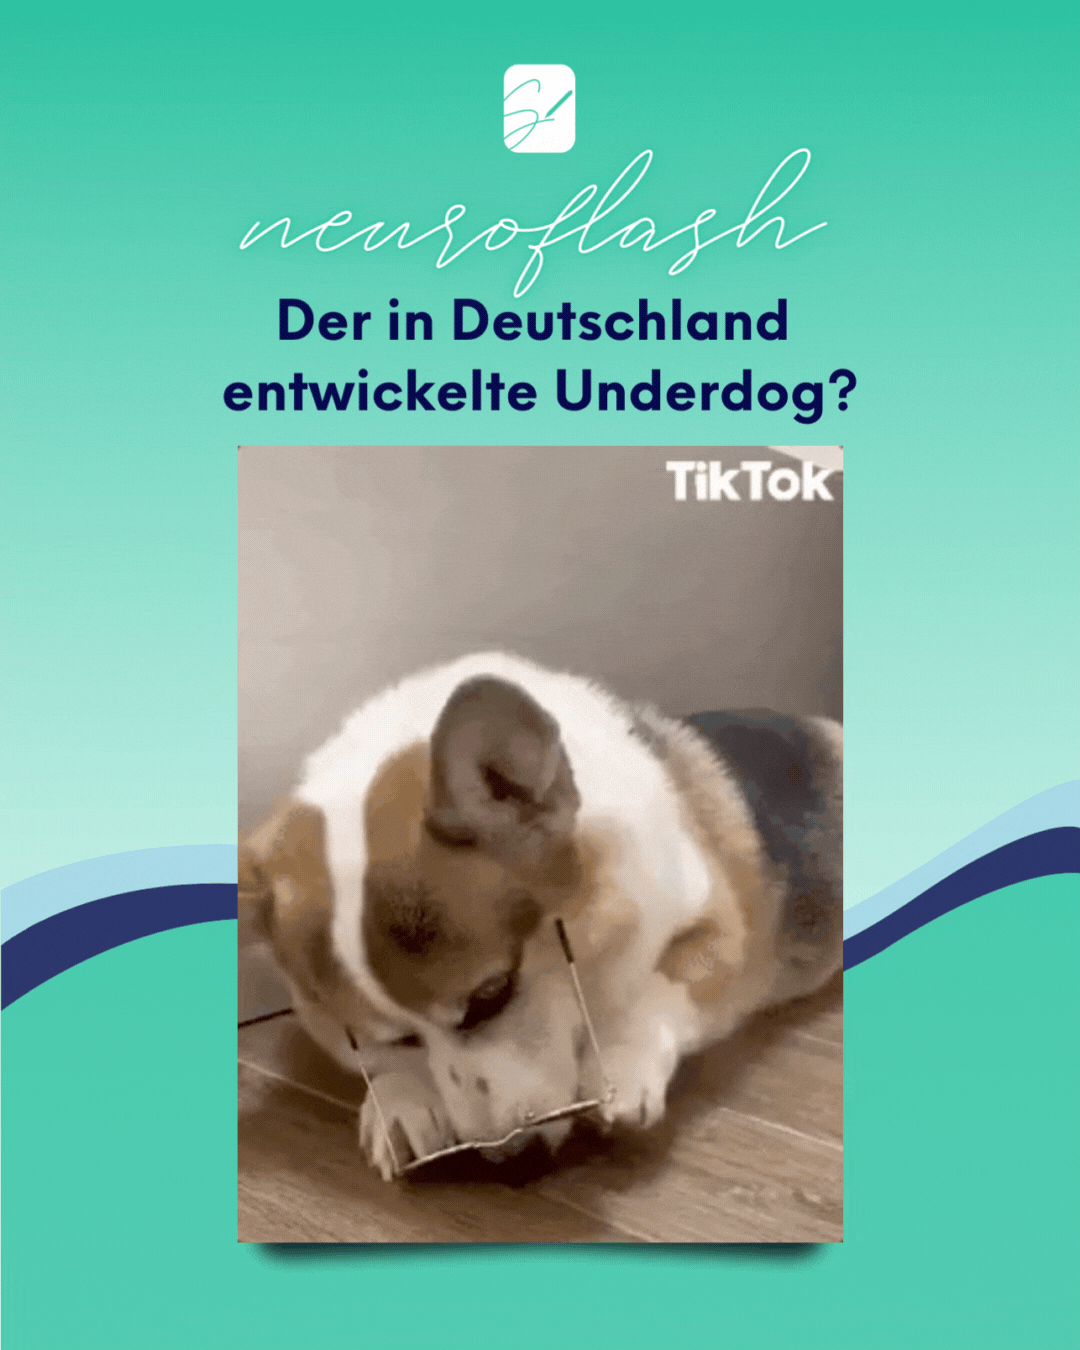 neuroflash – Der in Deutschland<br />
entwickelte Underdog?